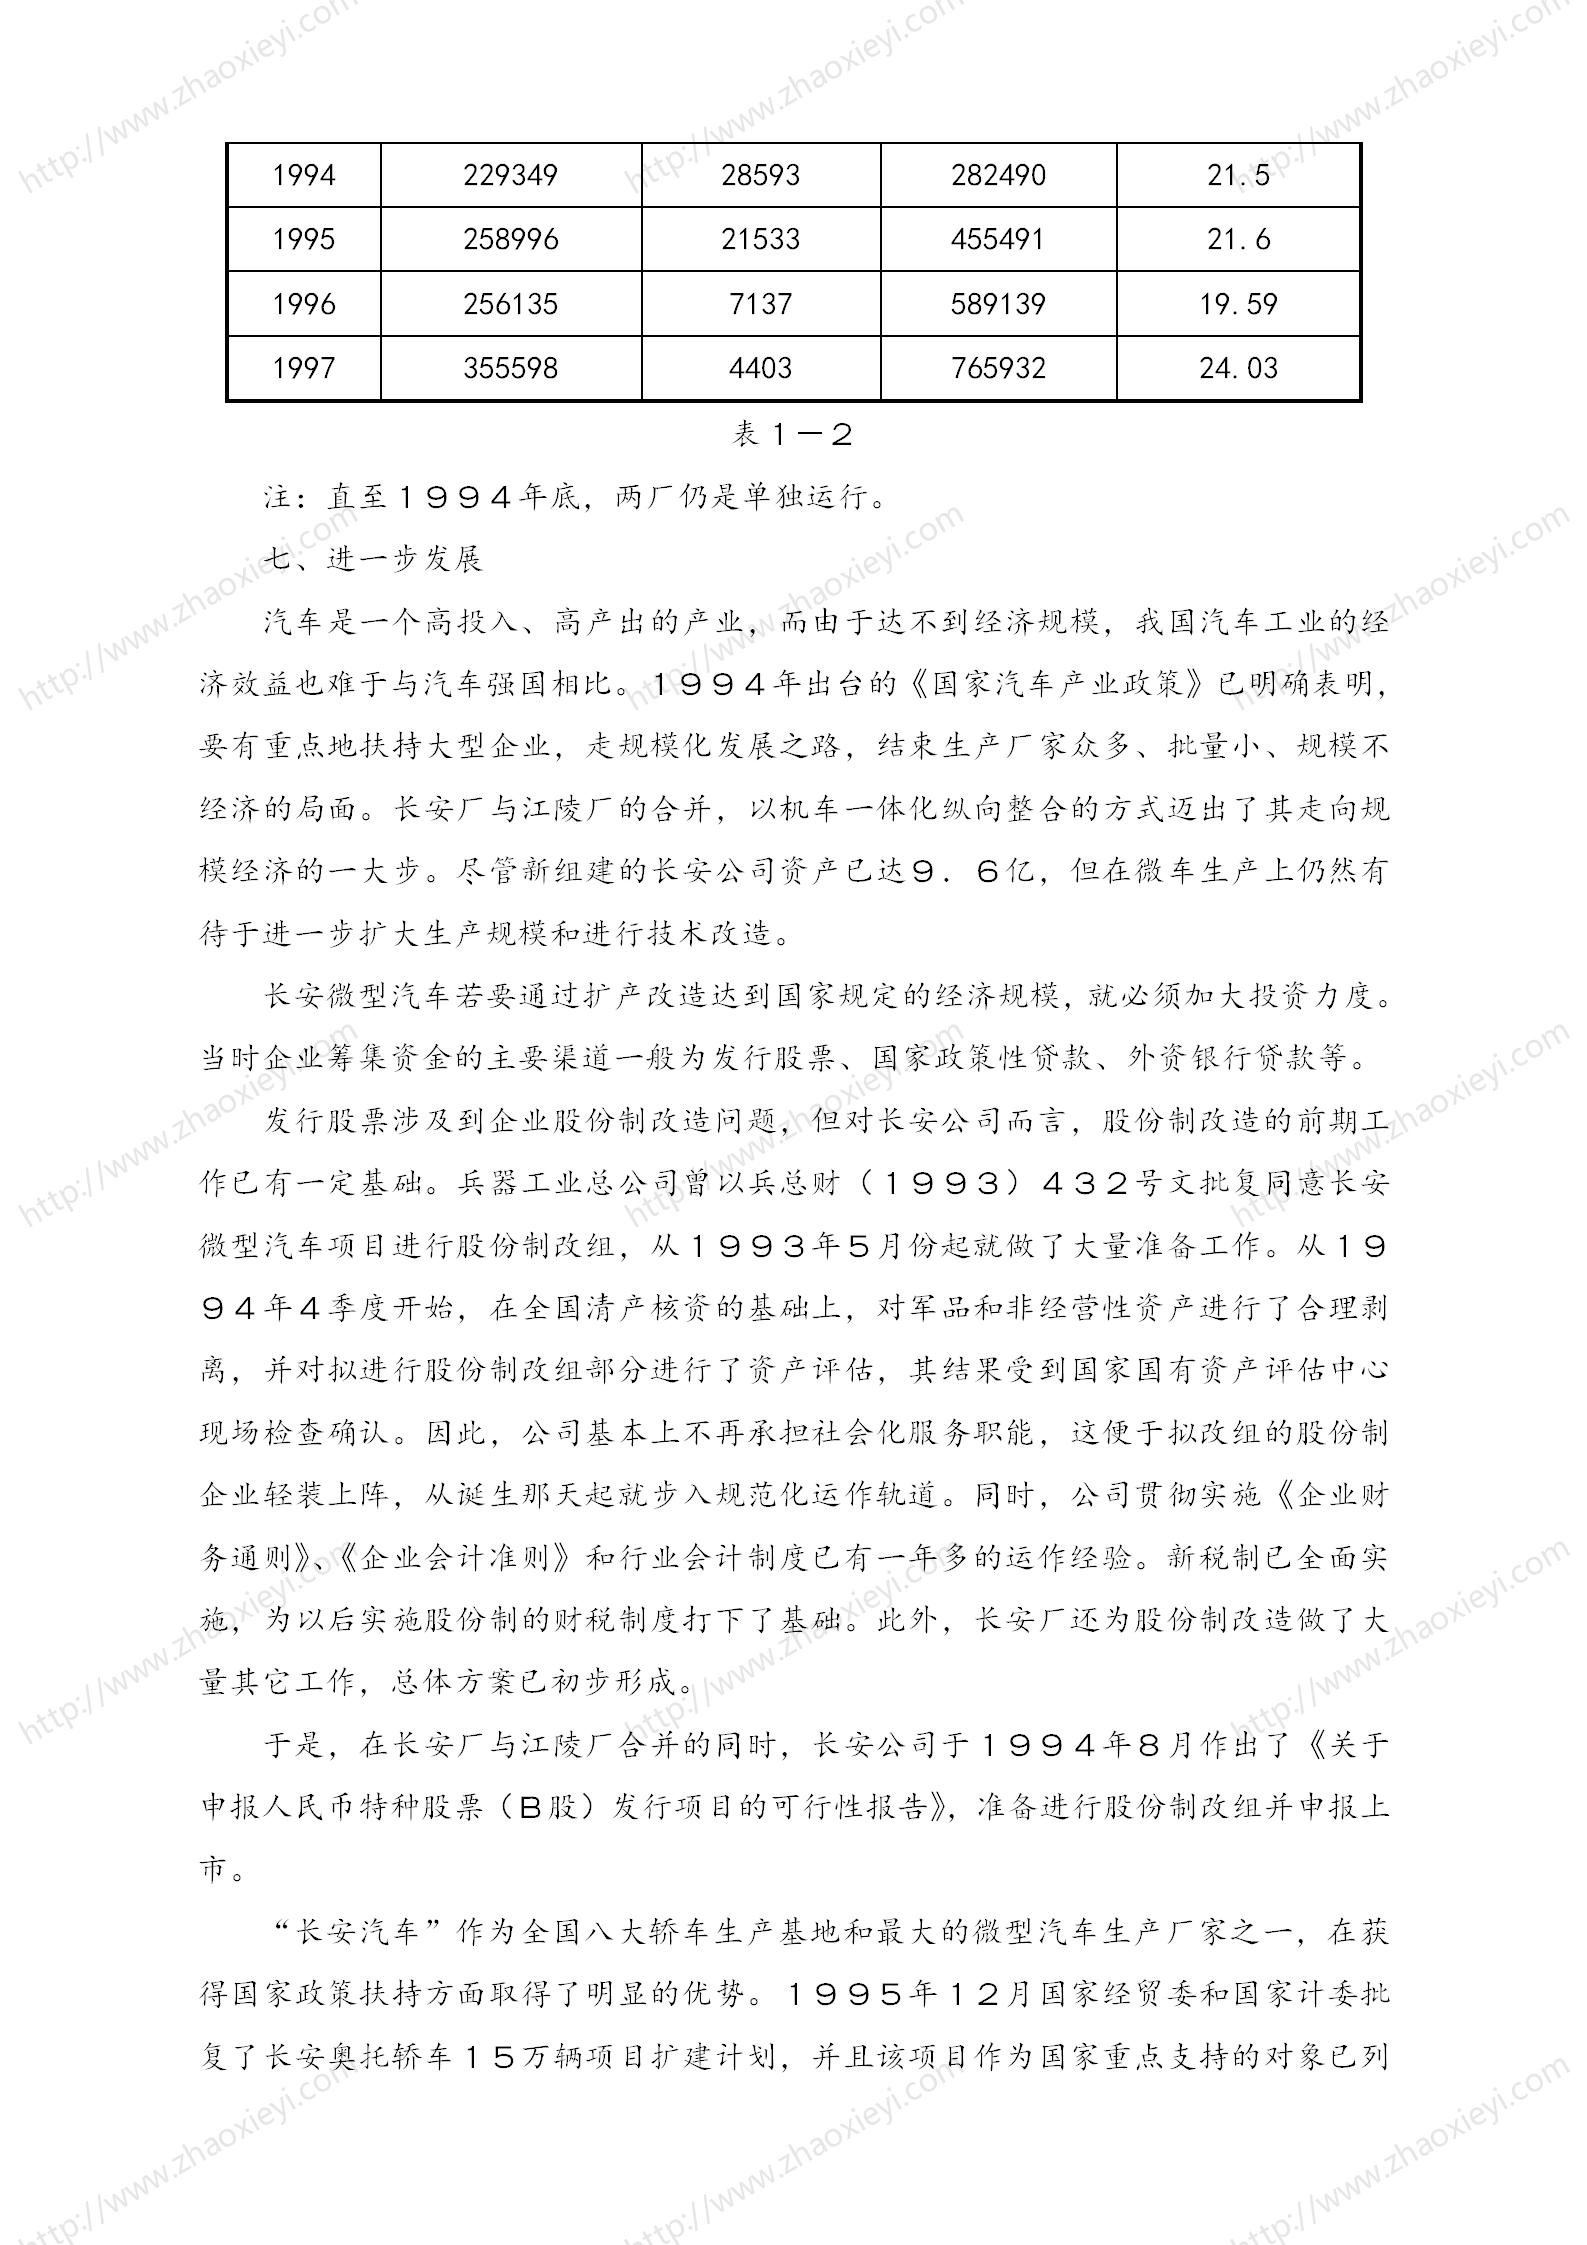 中国企业并购经典案例_148.jpg